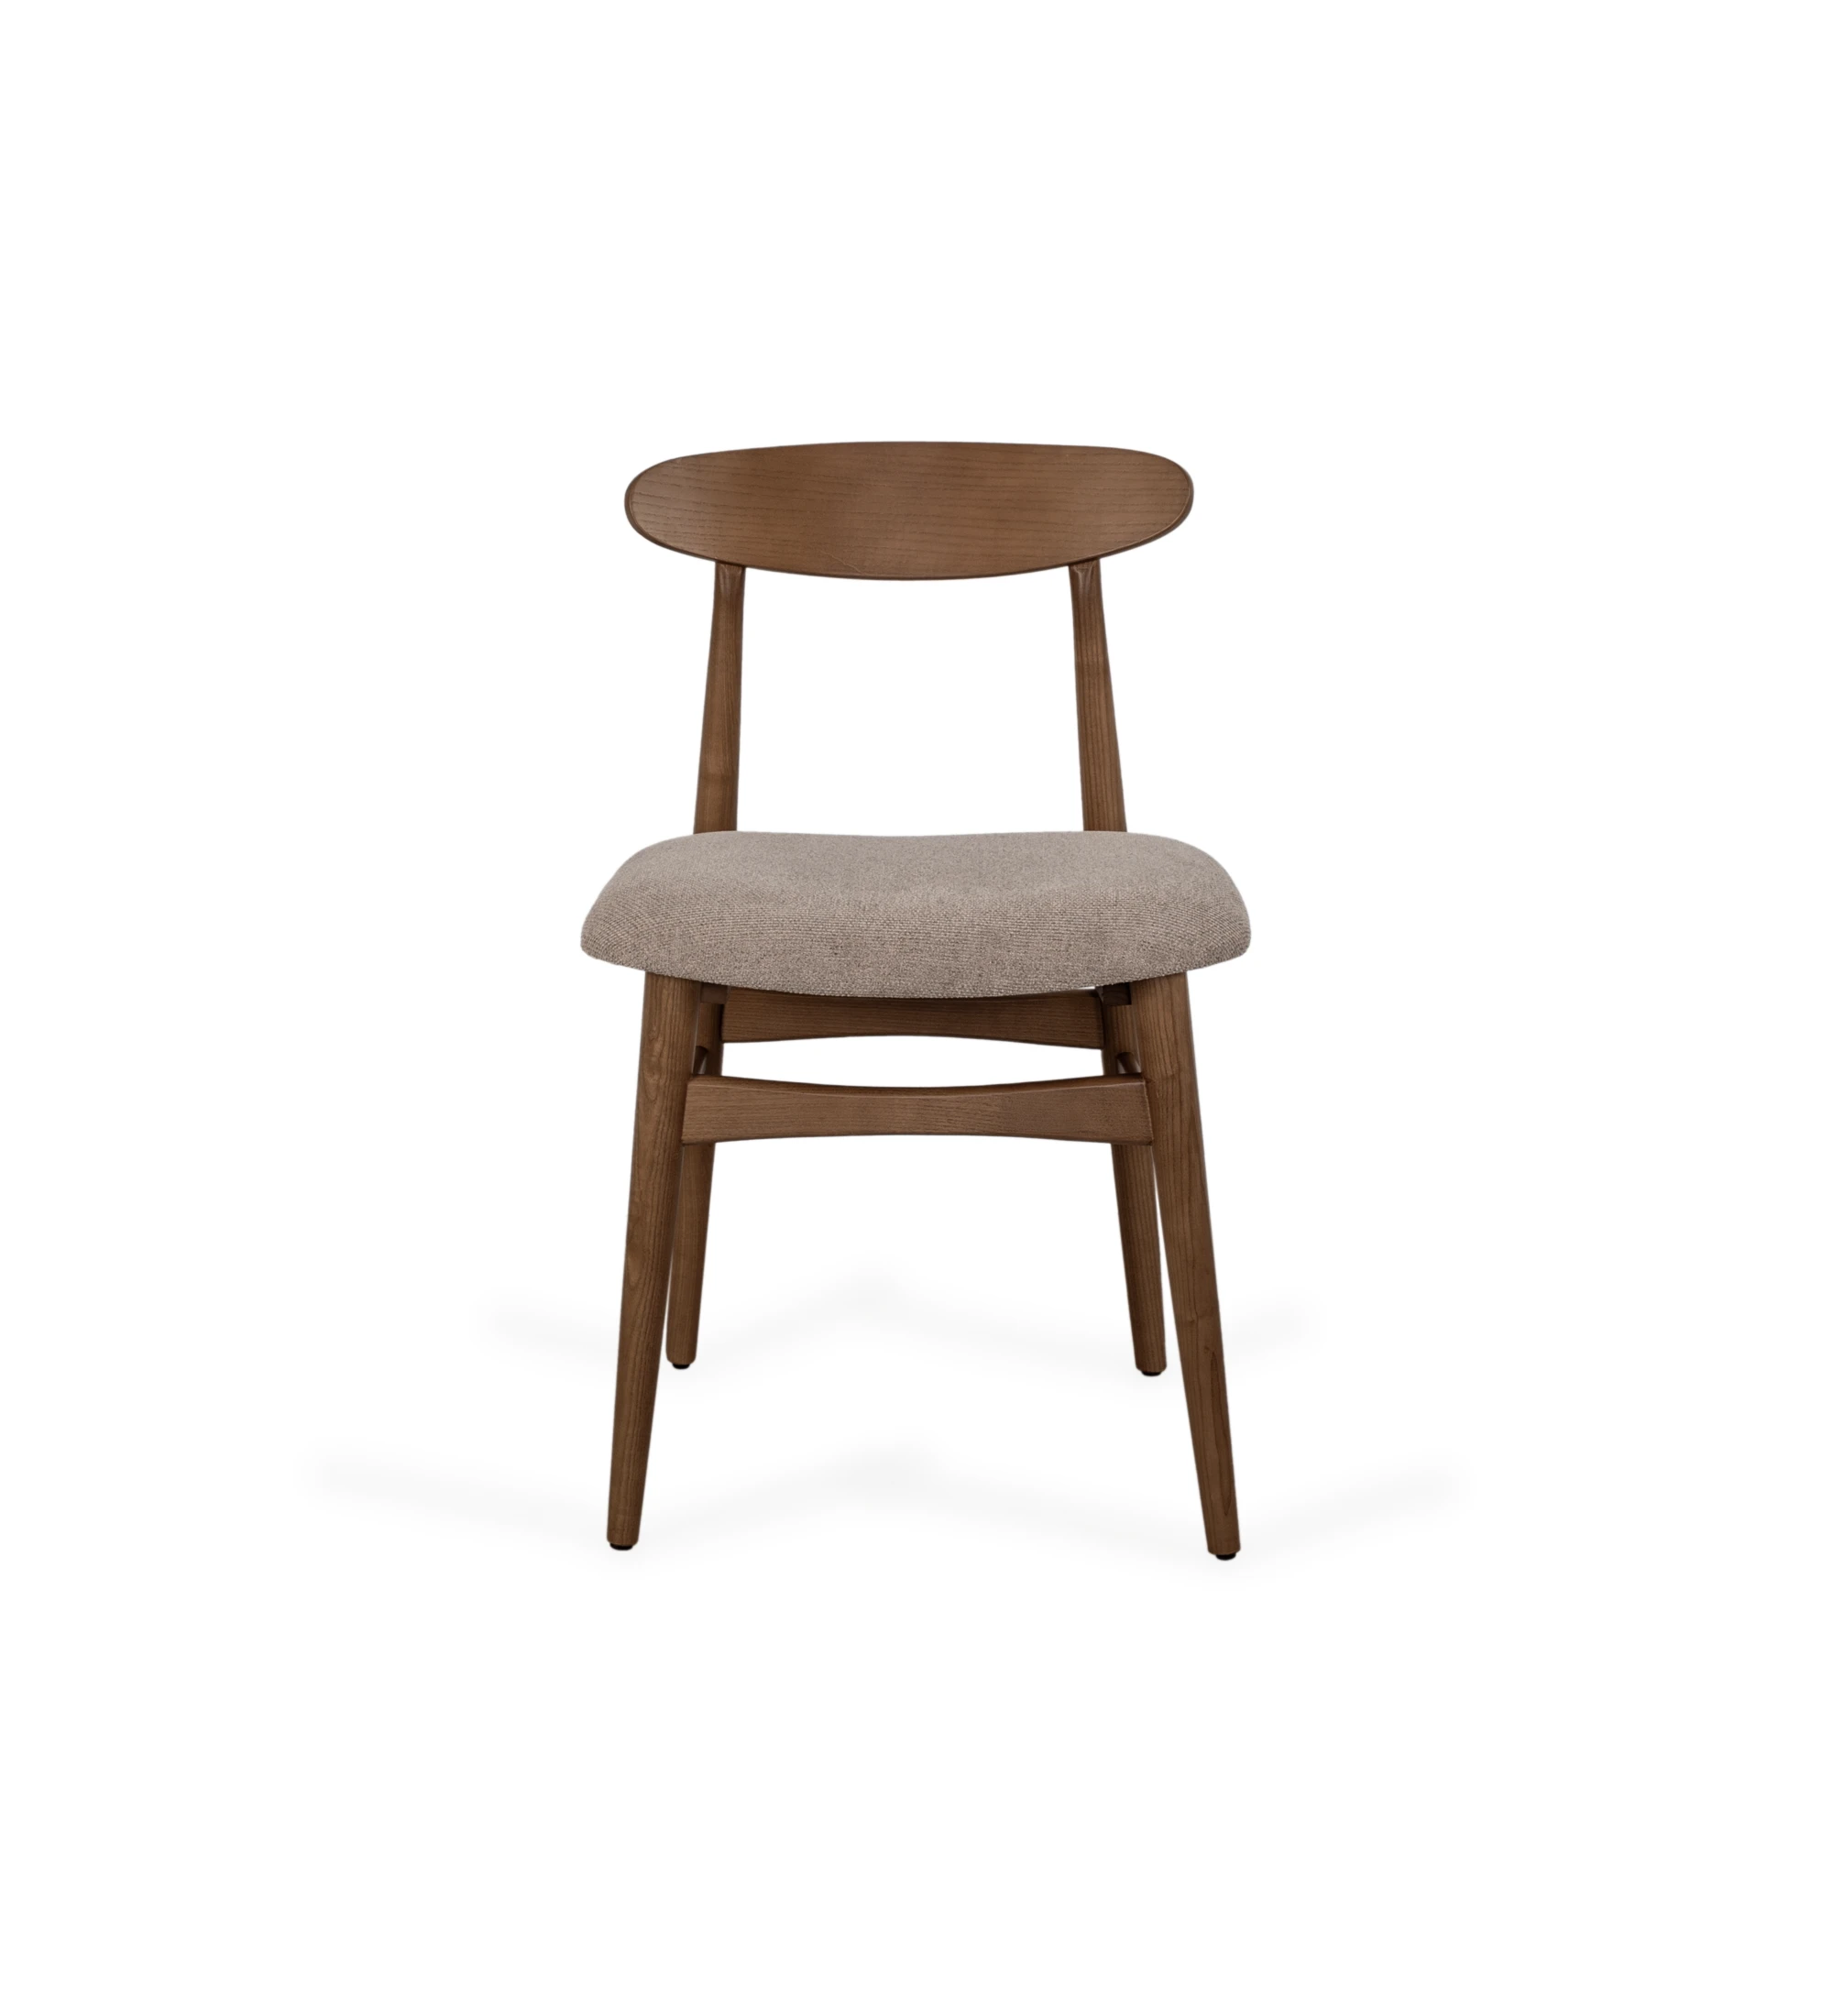 Cadeira com esturtura em madeira cor nogueira e com assento estofado a tecido.